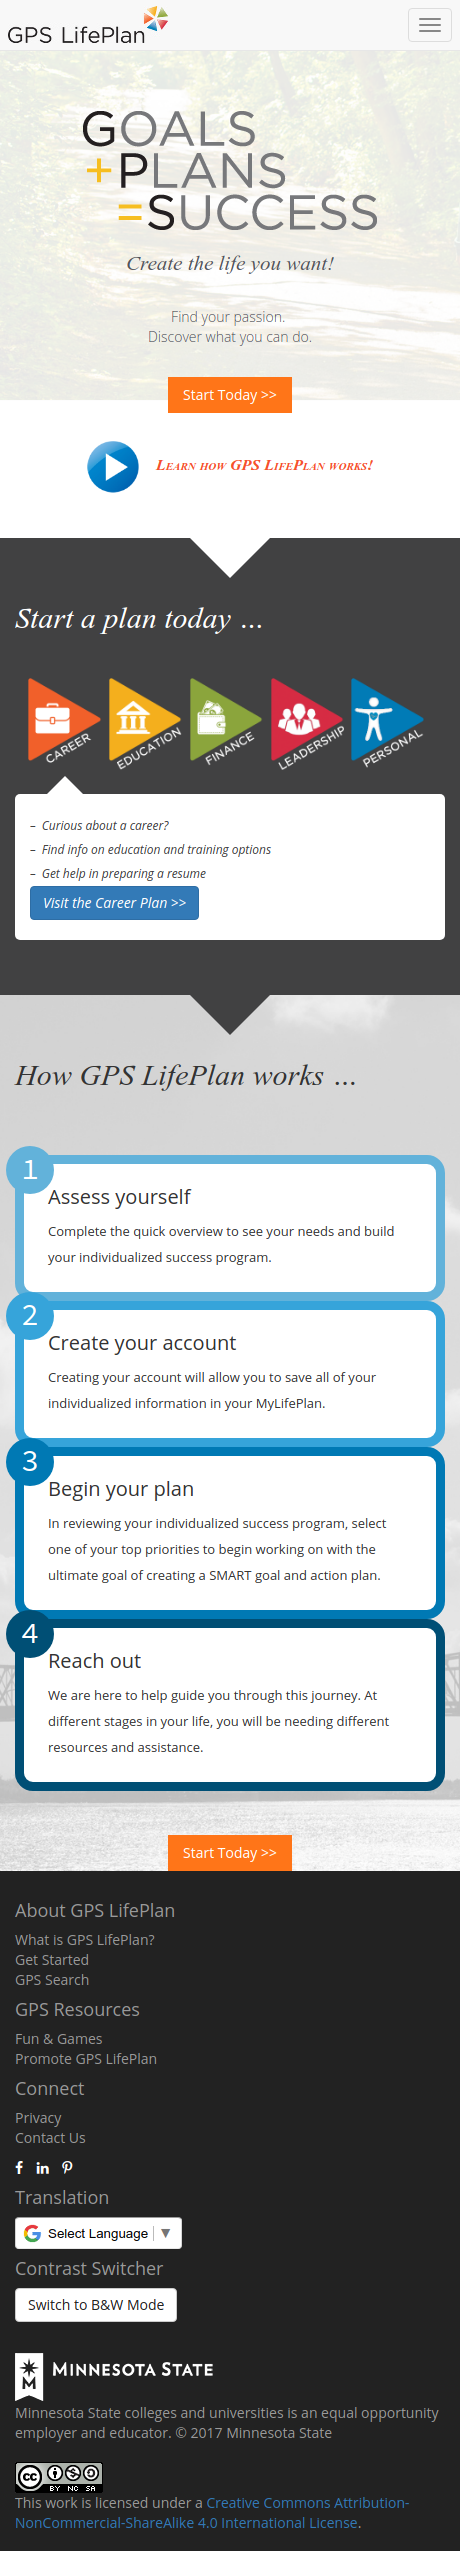 My GPS LifePlan screenshot